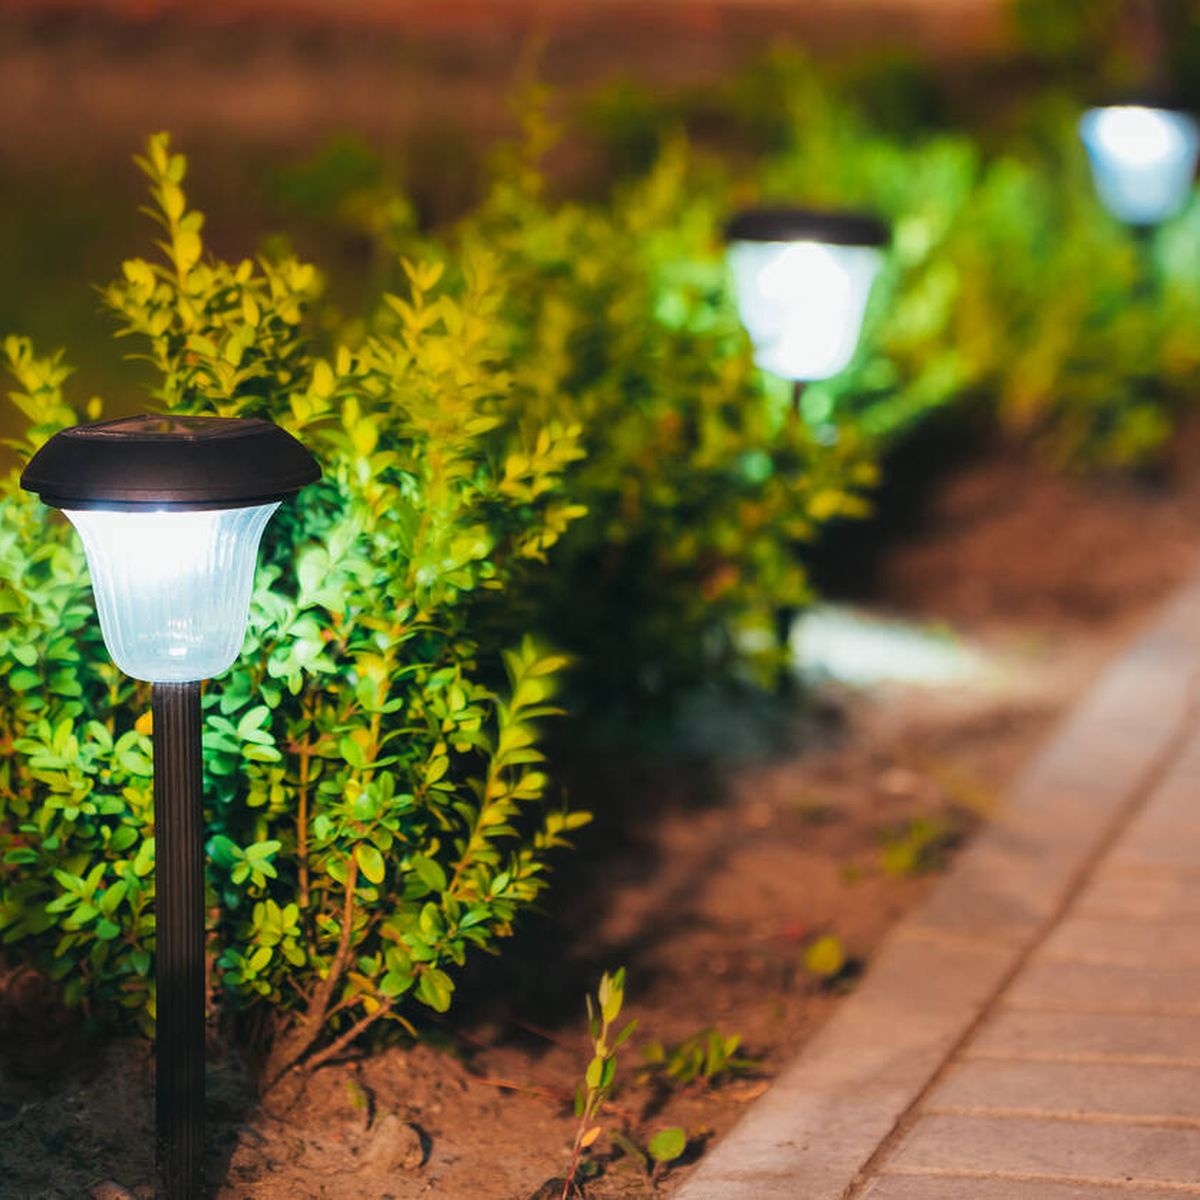 Mejores lamparas solares para jardín y terraza.【ILUMINACIÓN SOLAR】